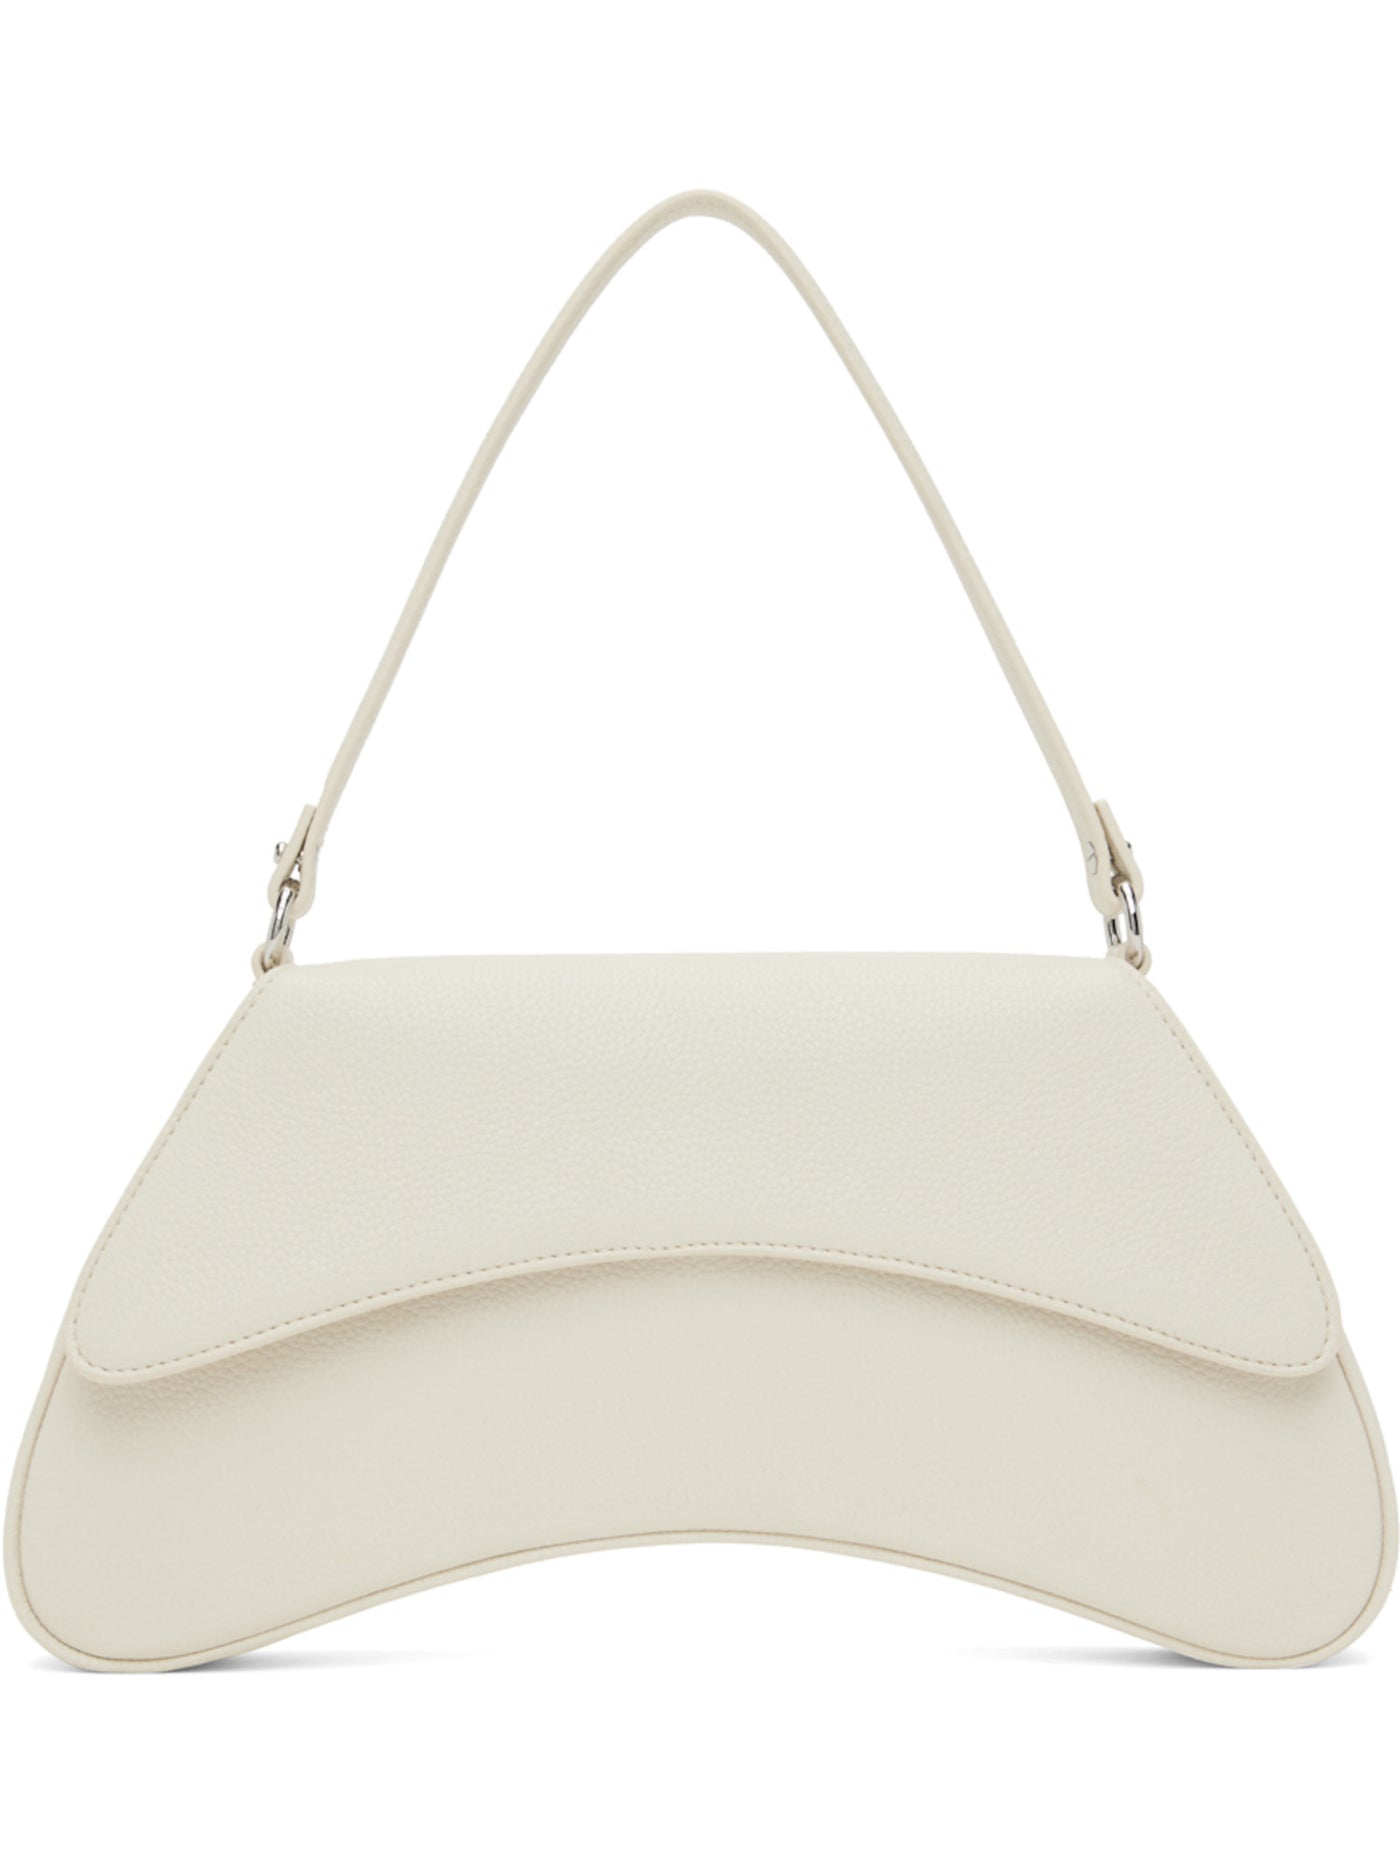 SIMON MILLER Women's White Solid Single Strap Shoulder Bag